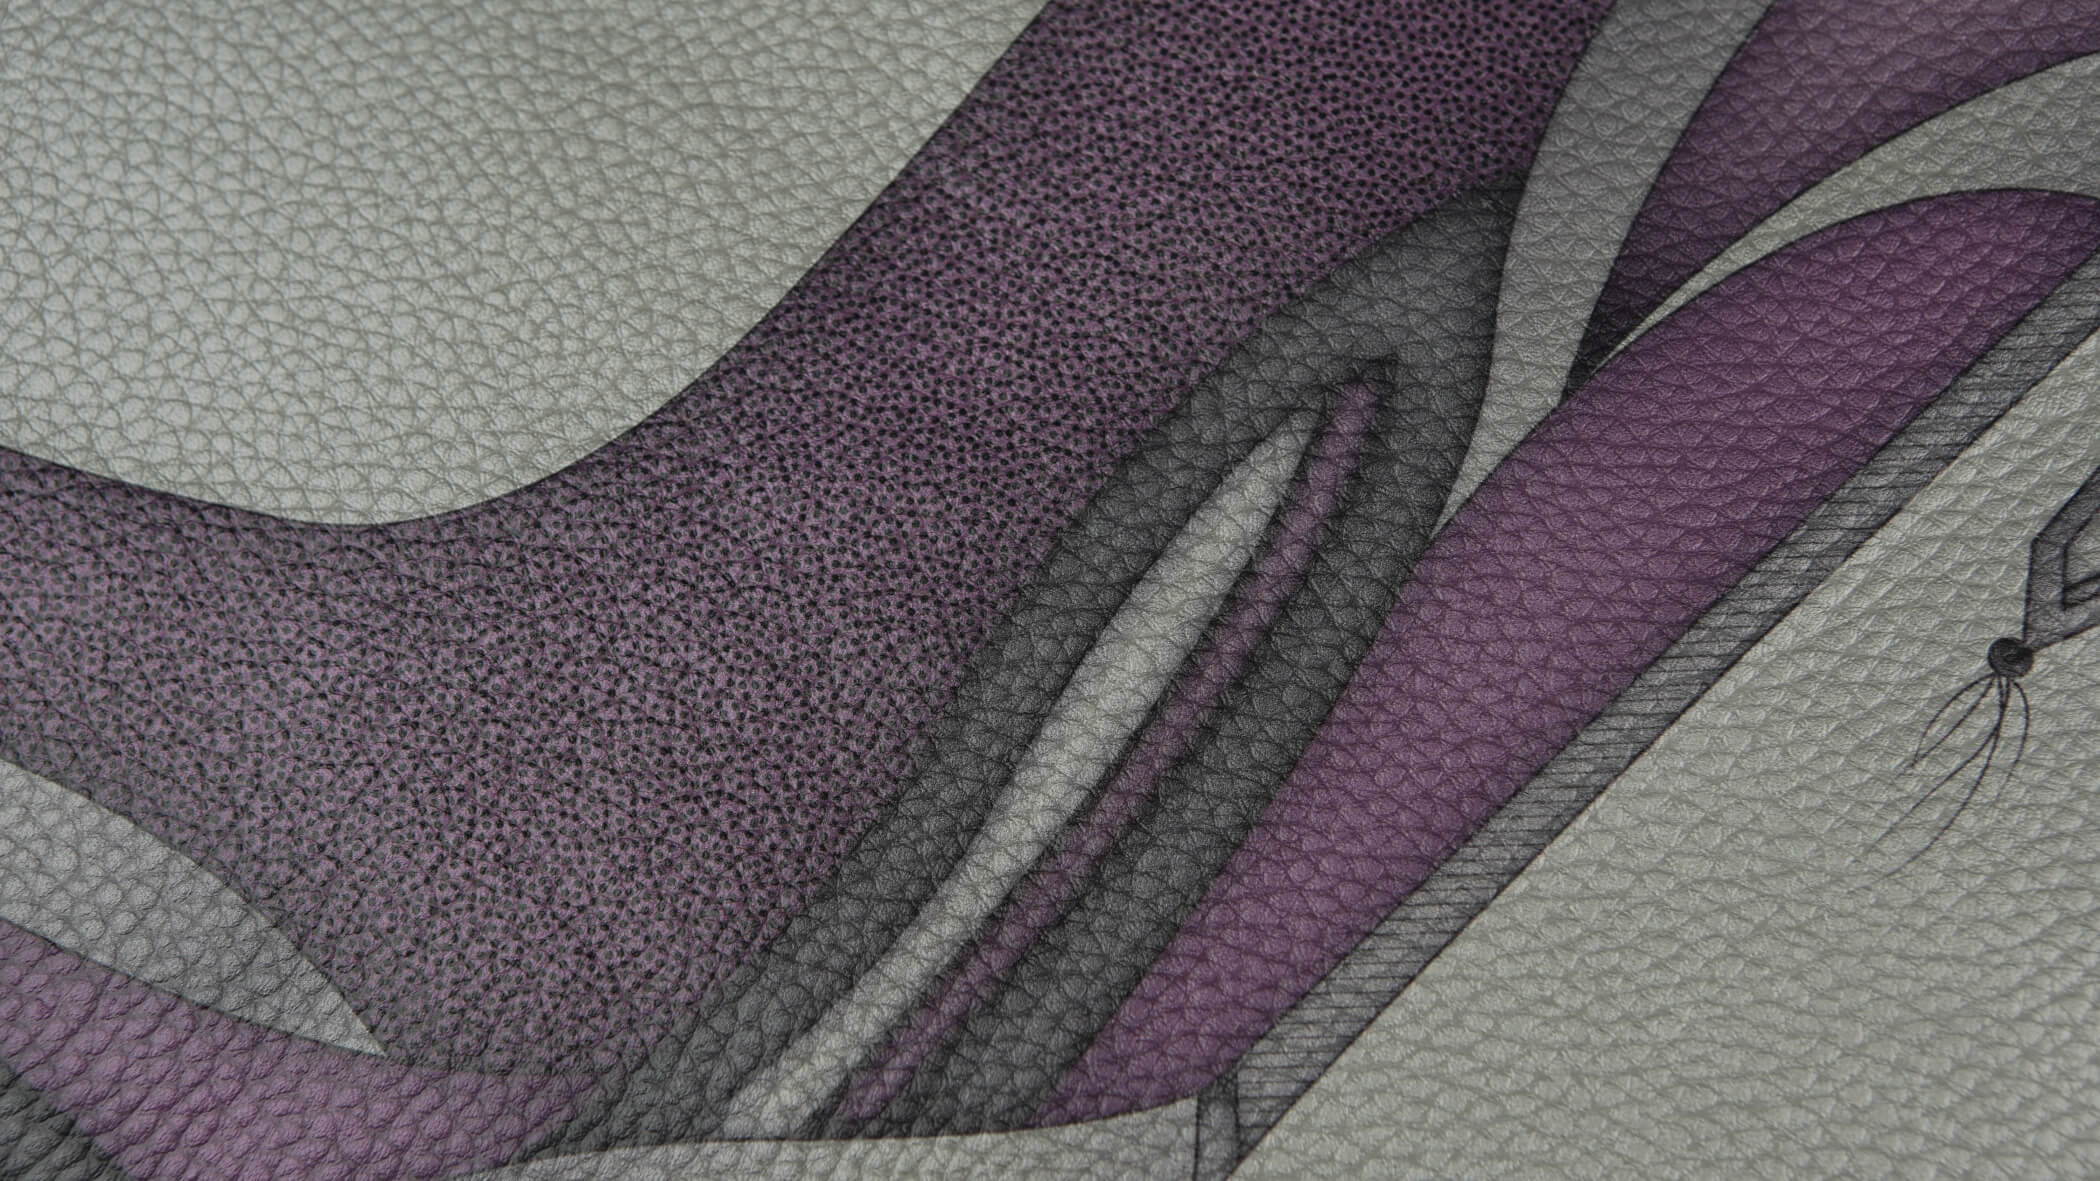 Impressão ultravioleta direta em tecido